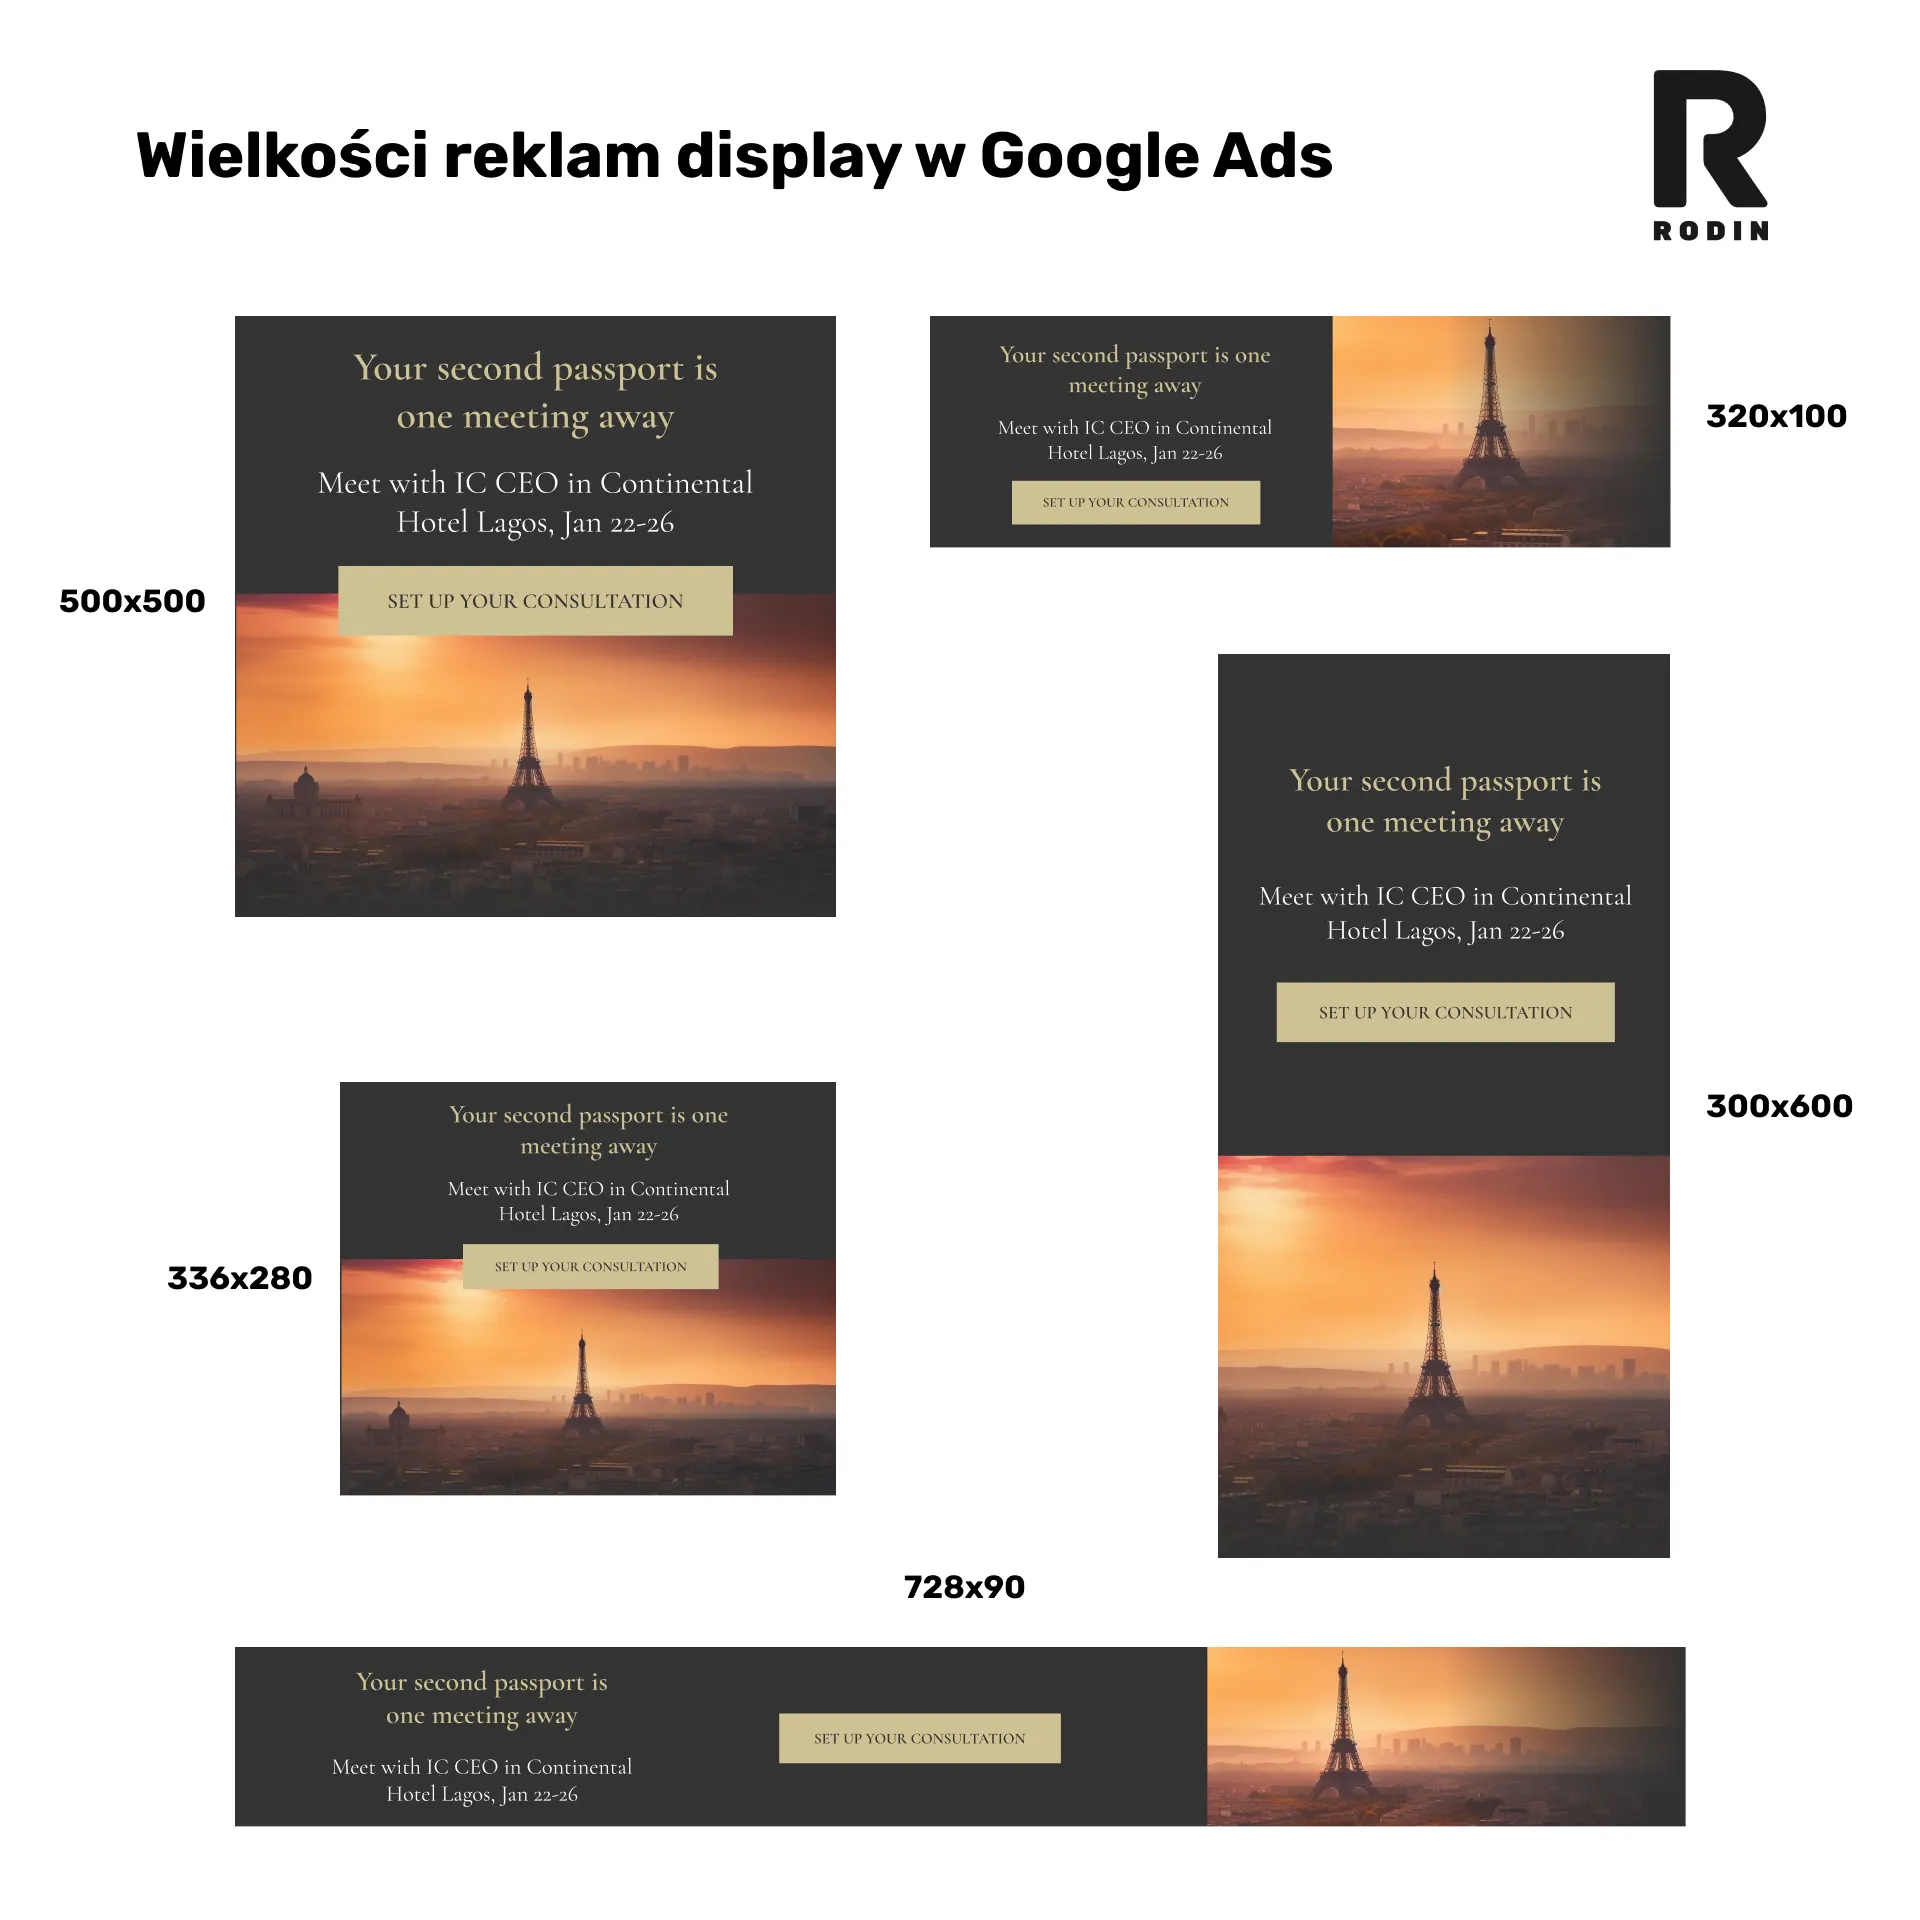 Wielkość reklam display w Google Ads